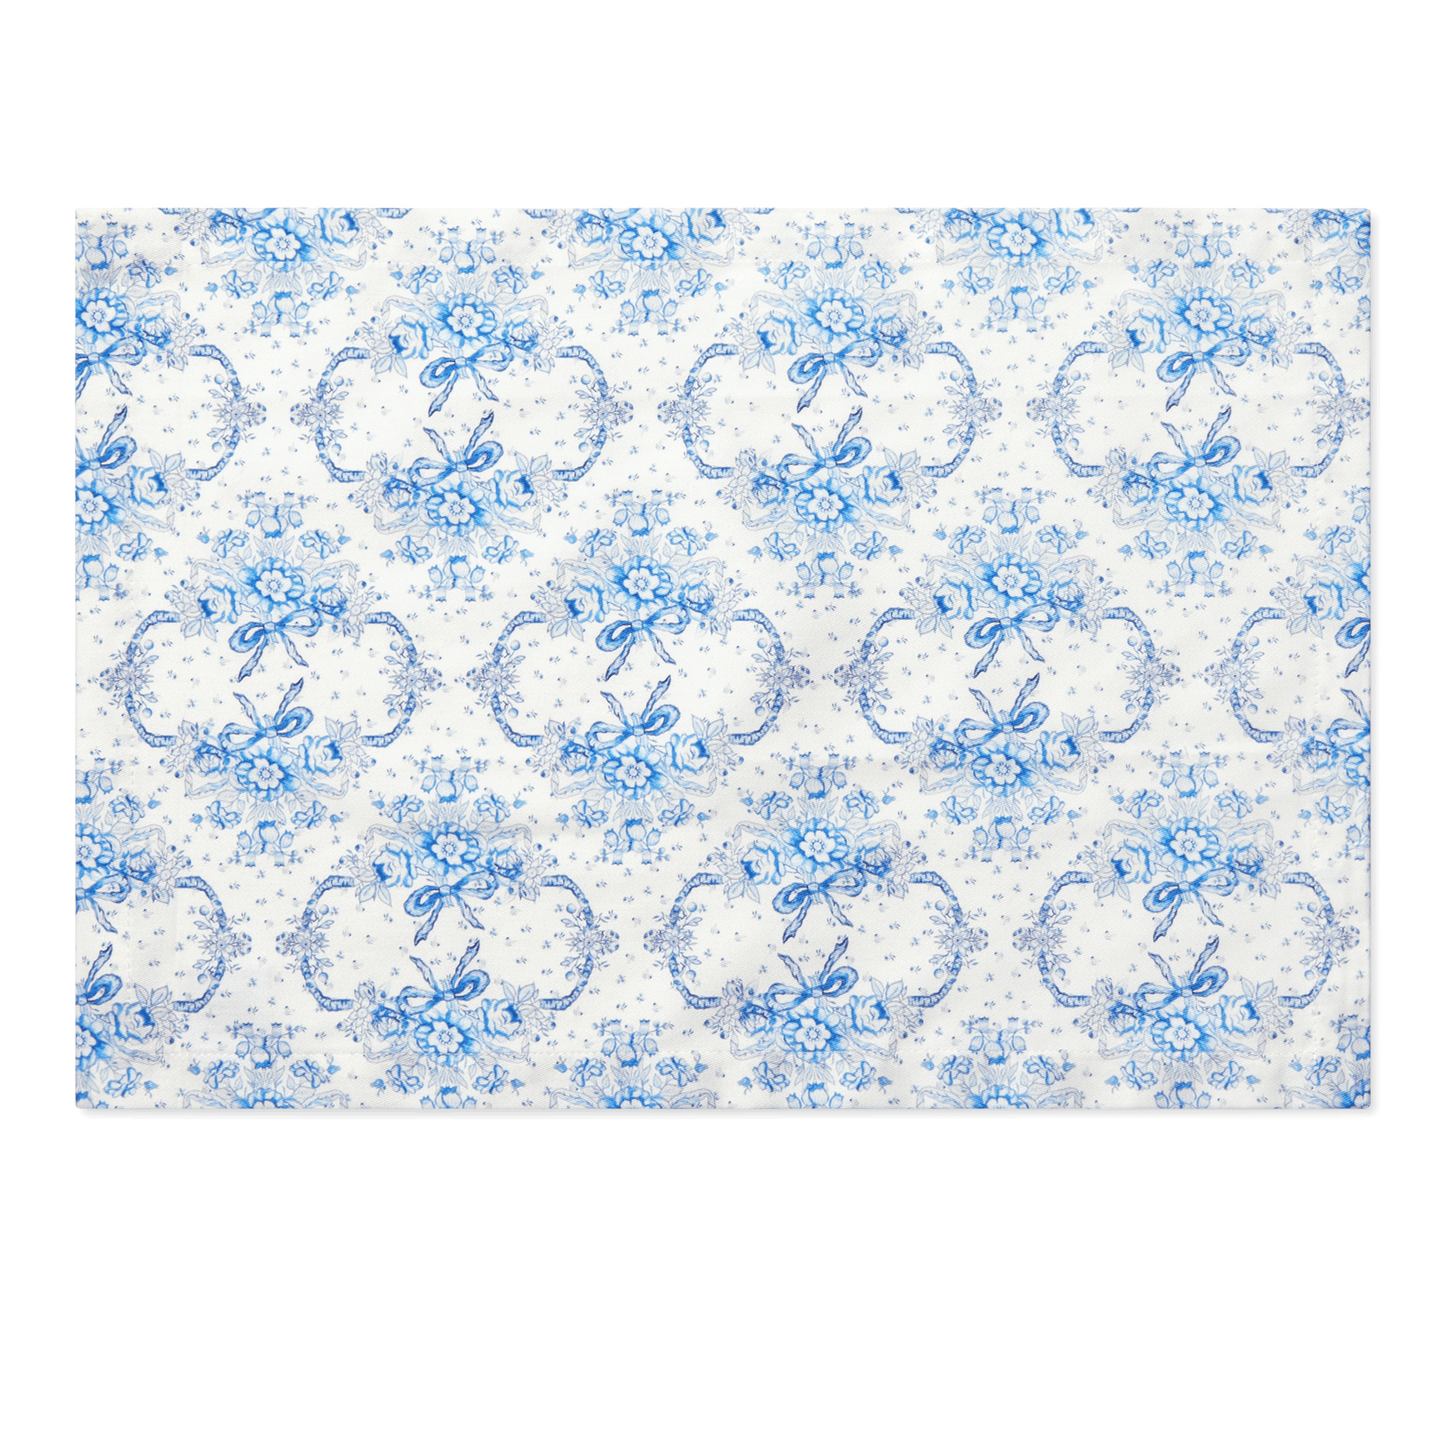 4-Piece Rectangular Placemat Set Sarah Flint x Maman Blue And White Cotton